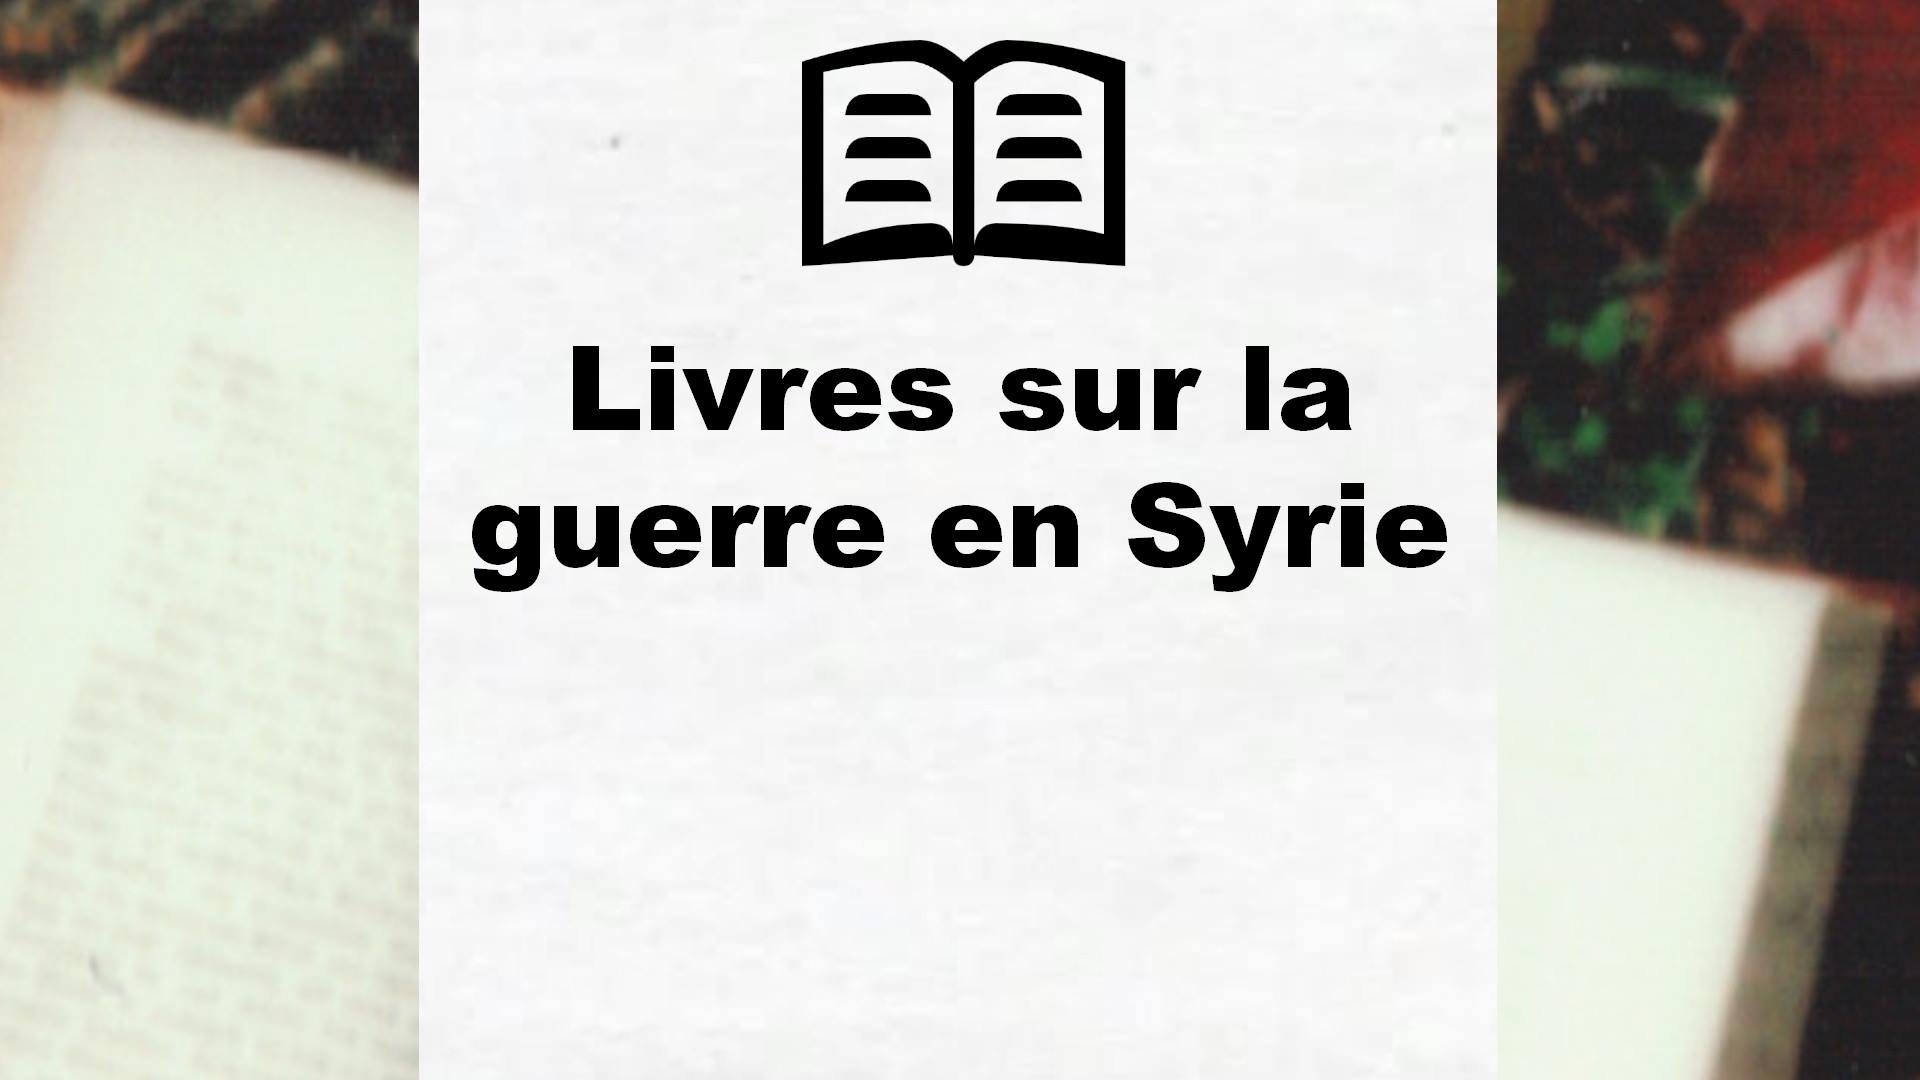 Livres sur la guerre en Syrie